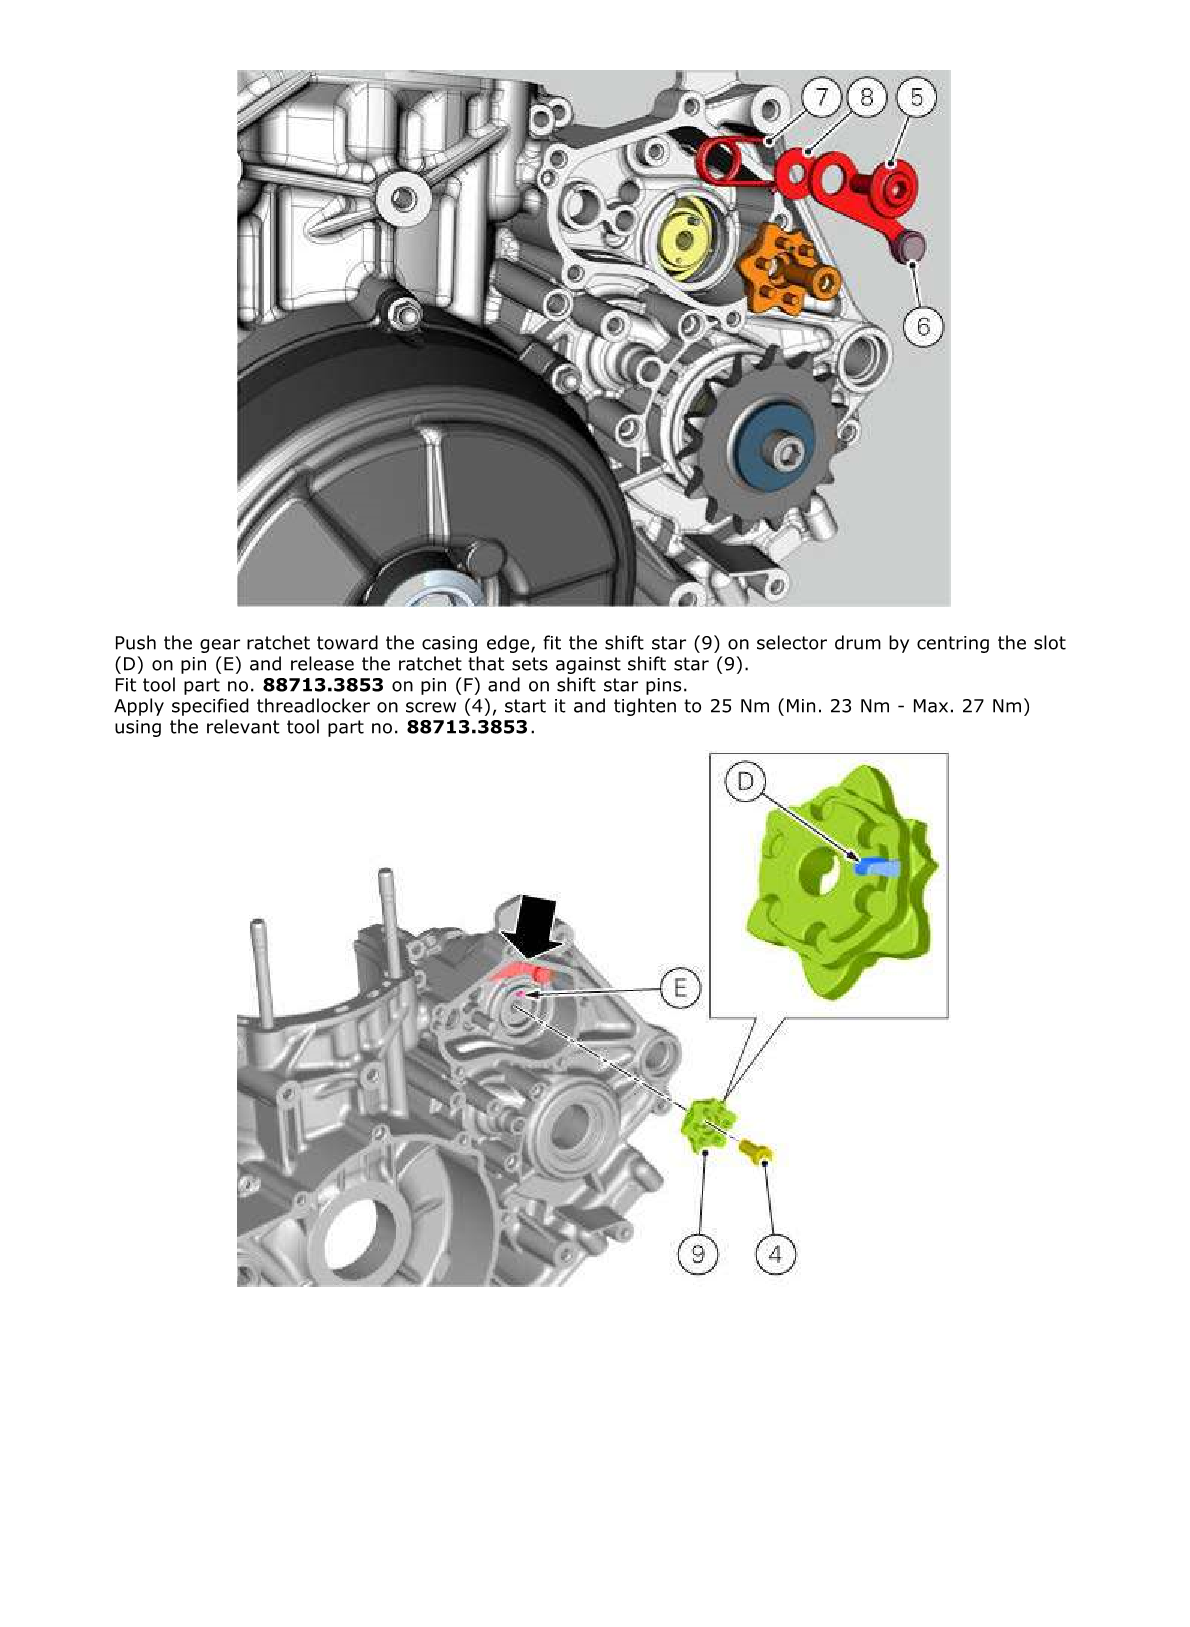 2012-2014 Ducati Panigale S Tricolore 1199 Manual doble